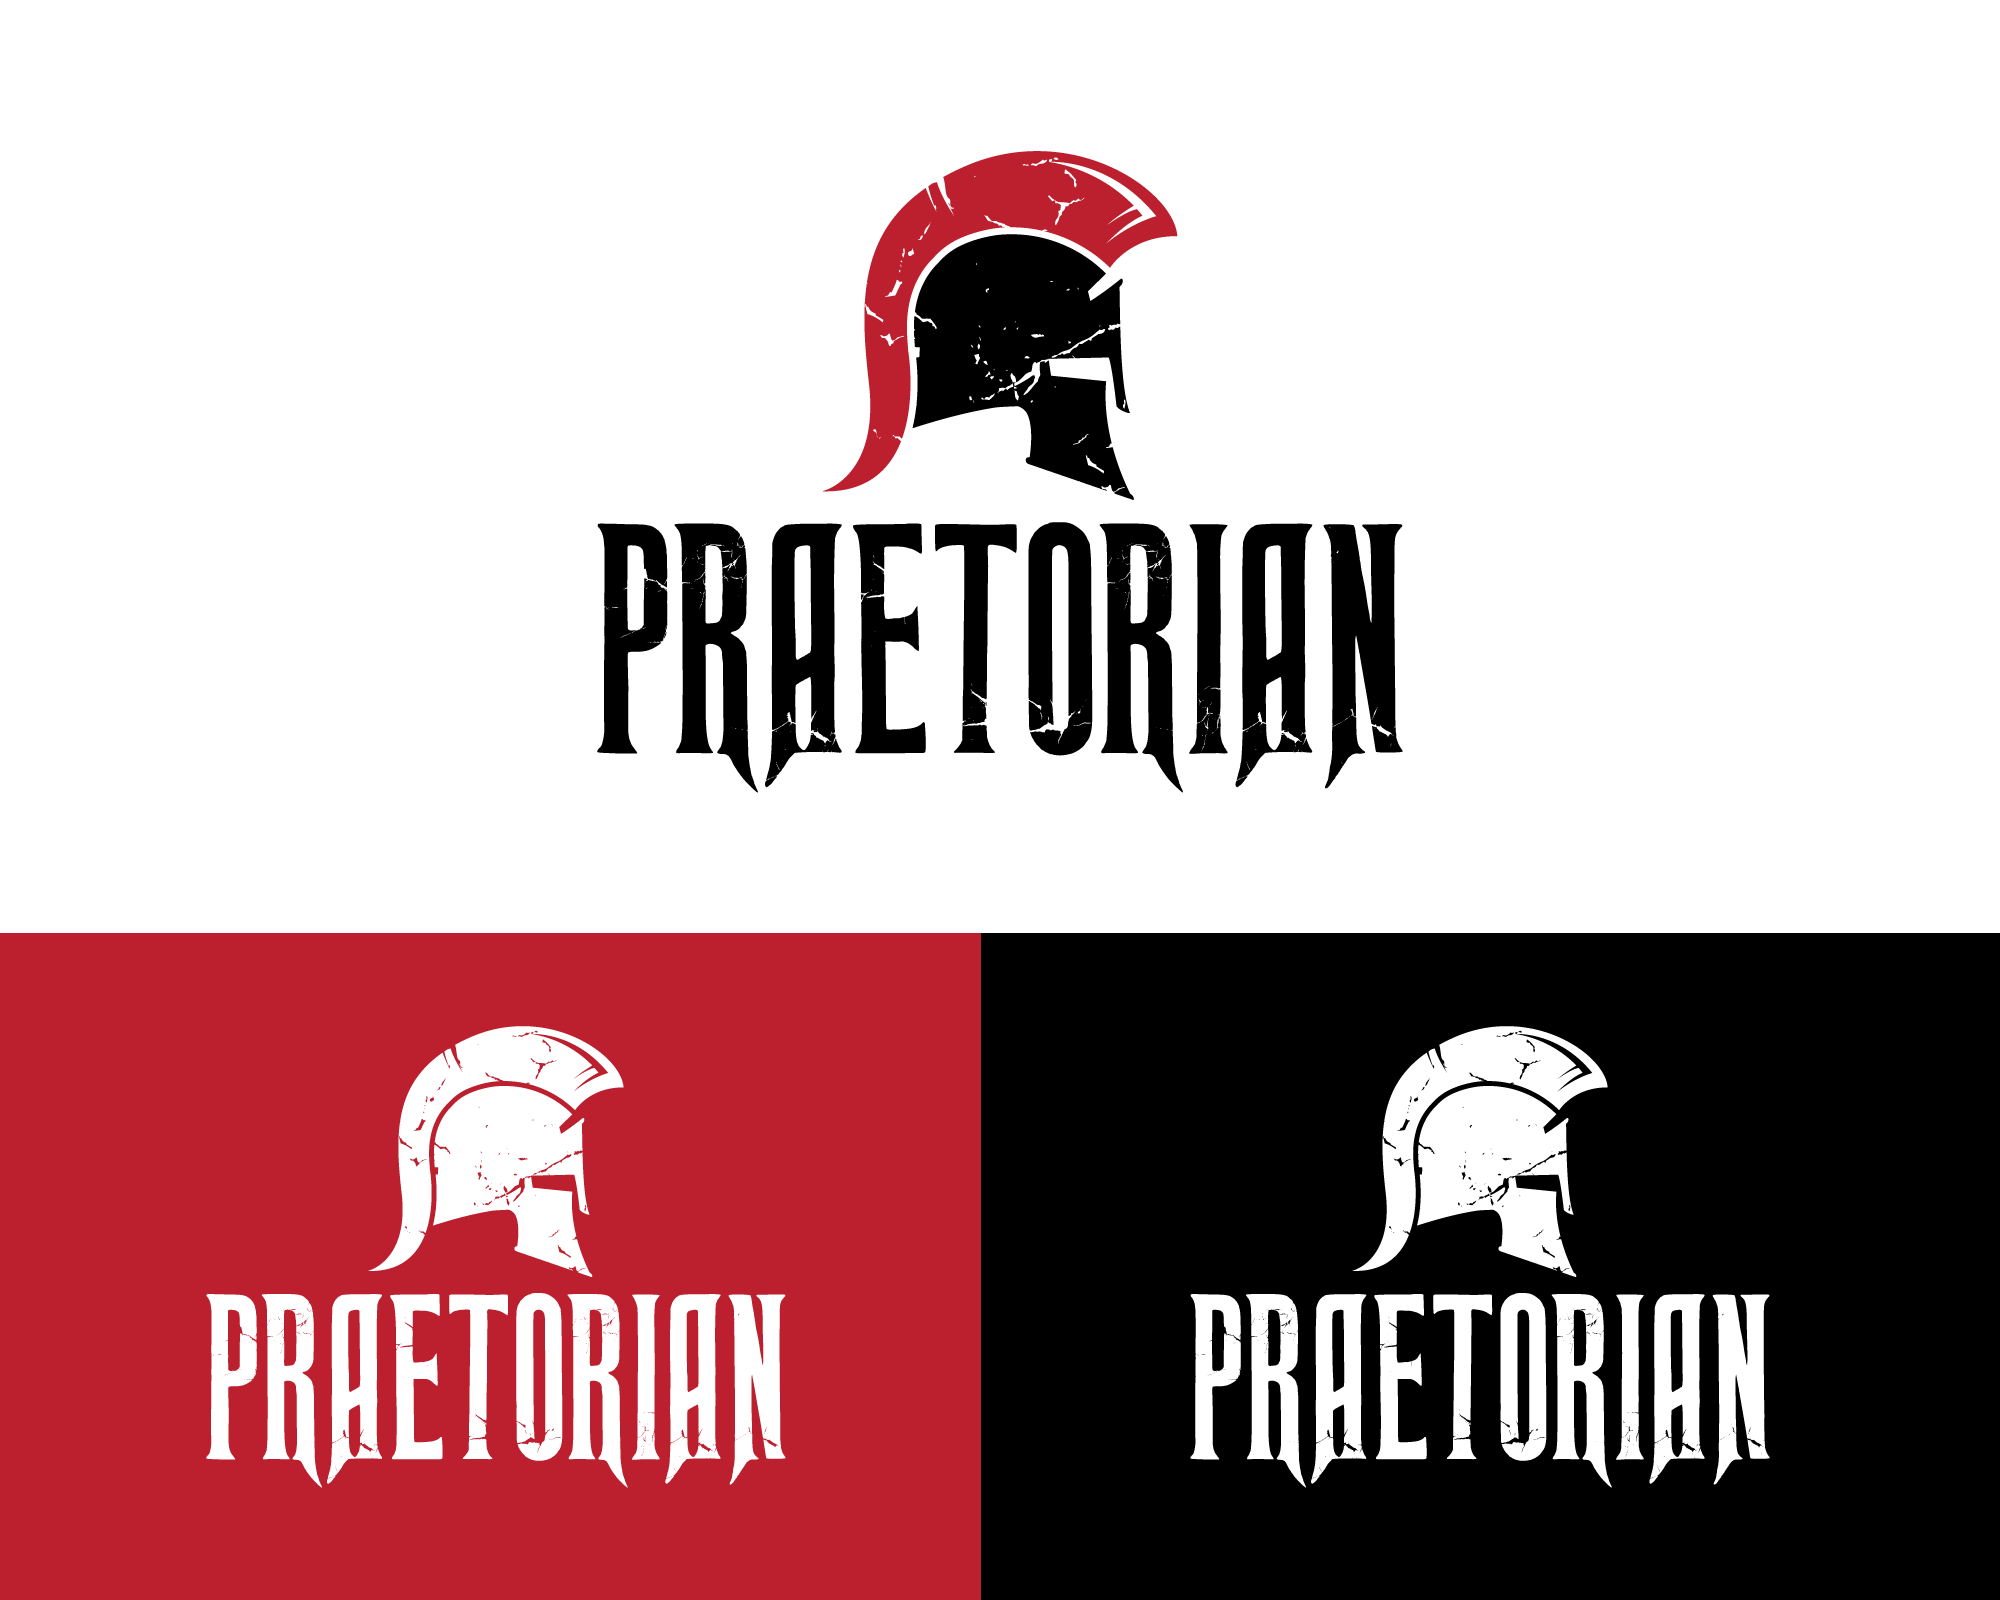 Logo Design Contest for Praetorian